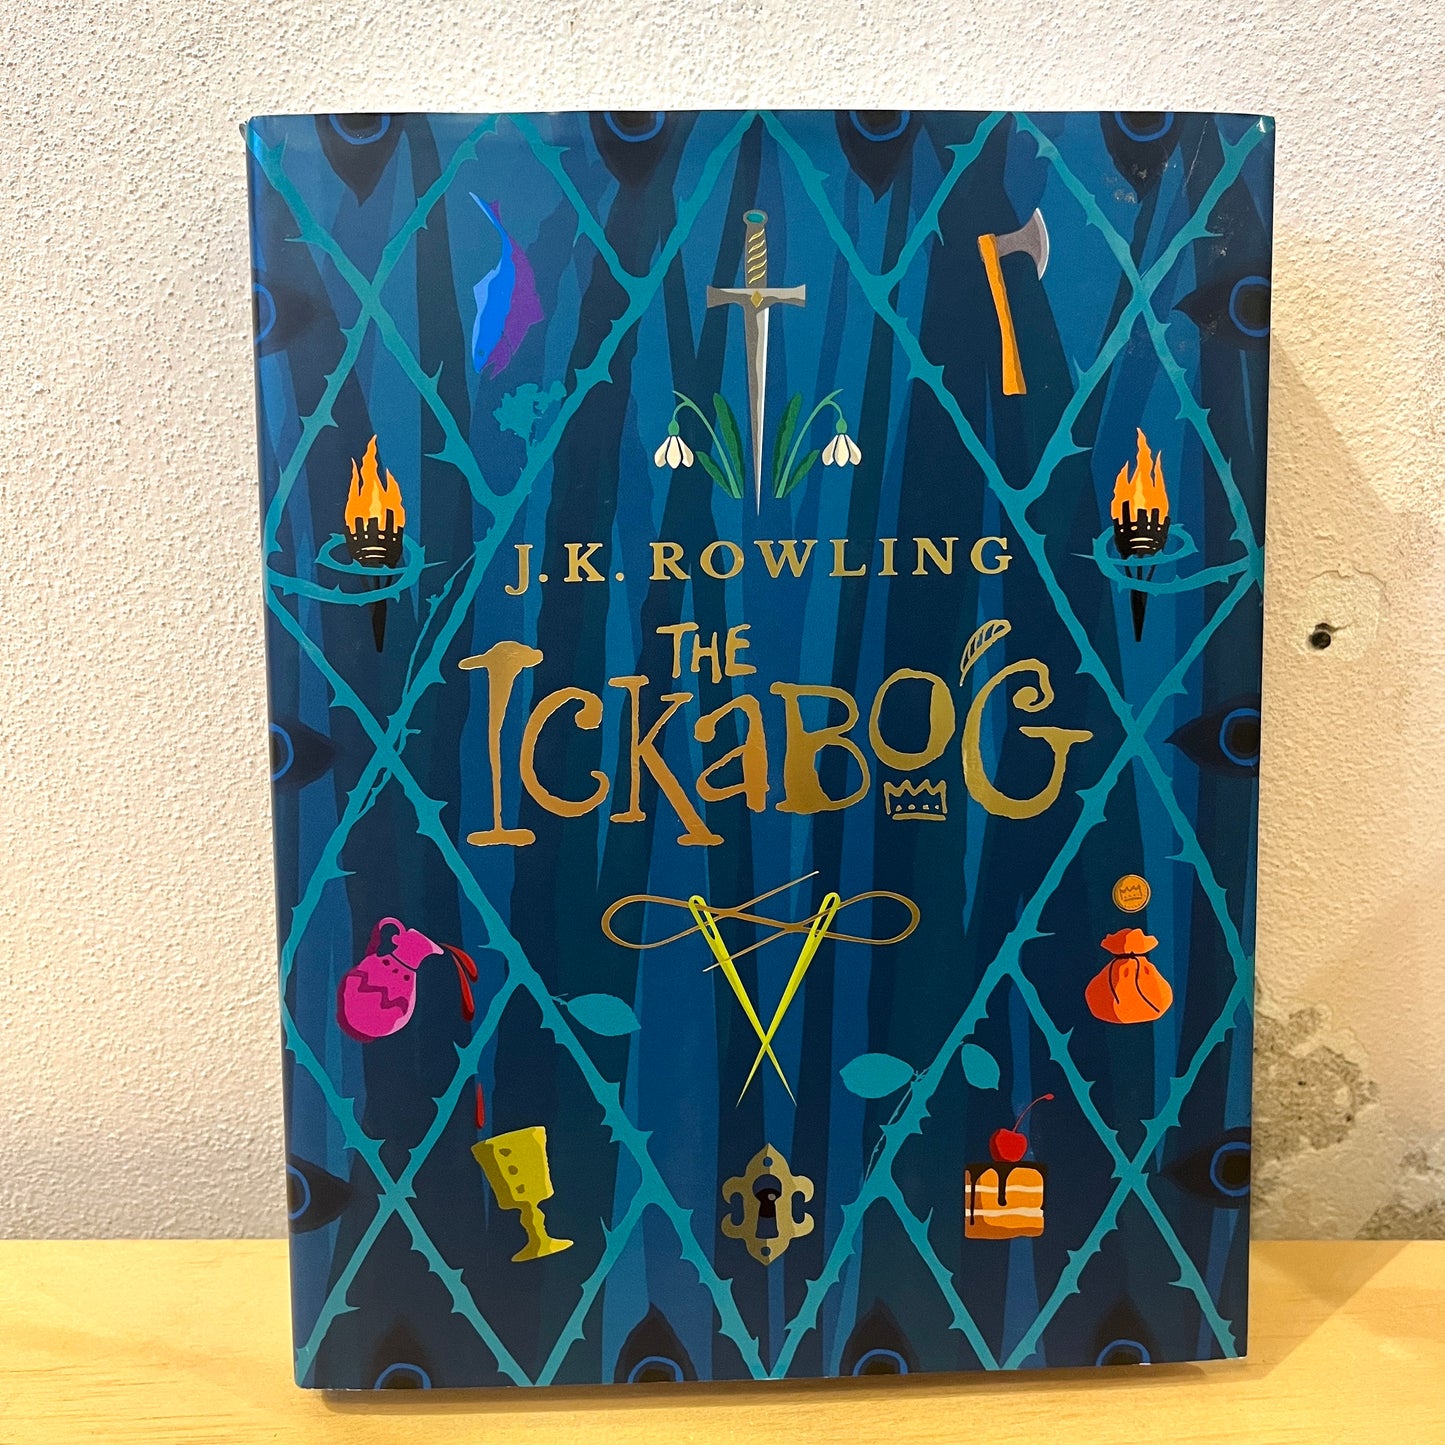 Ickabog – J. K. Rowling